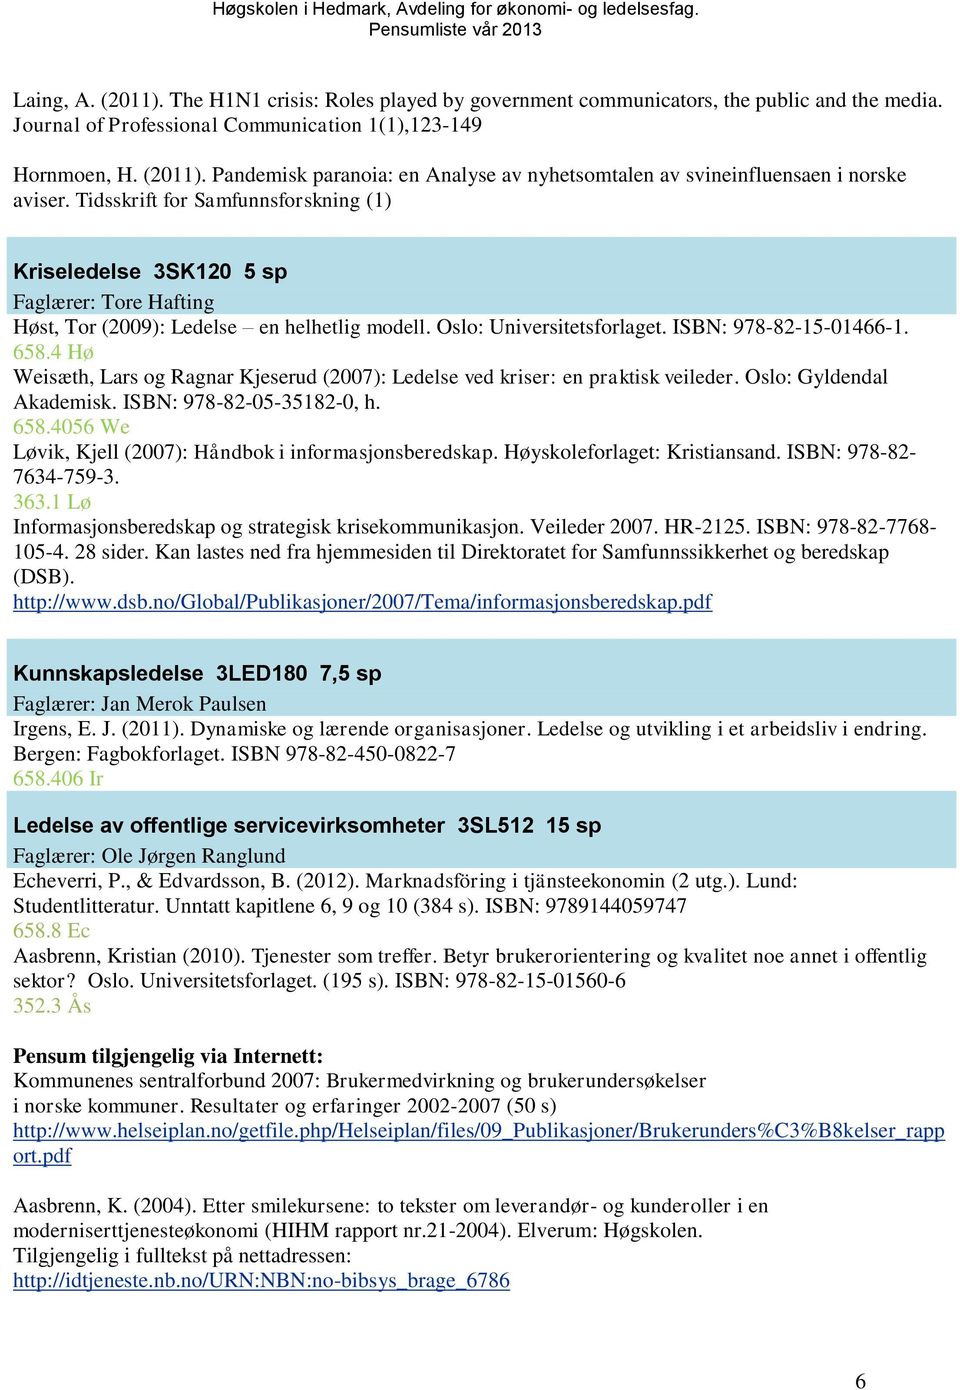 4 Hø Weisæth, Lars og Ragnar Kjeserud (2007): Ledelse ved kriser: en praktisk veileder. Oslo: Gyldendal Akademisk. ISBN: 978-82-05-35182-0, h. 658.